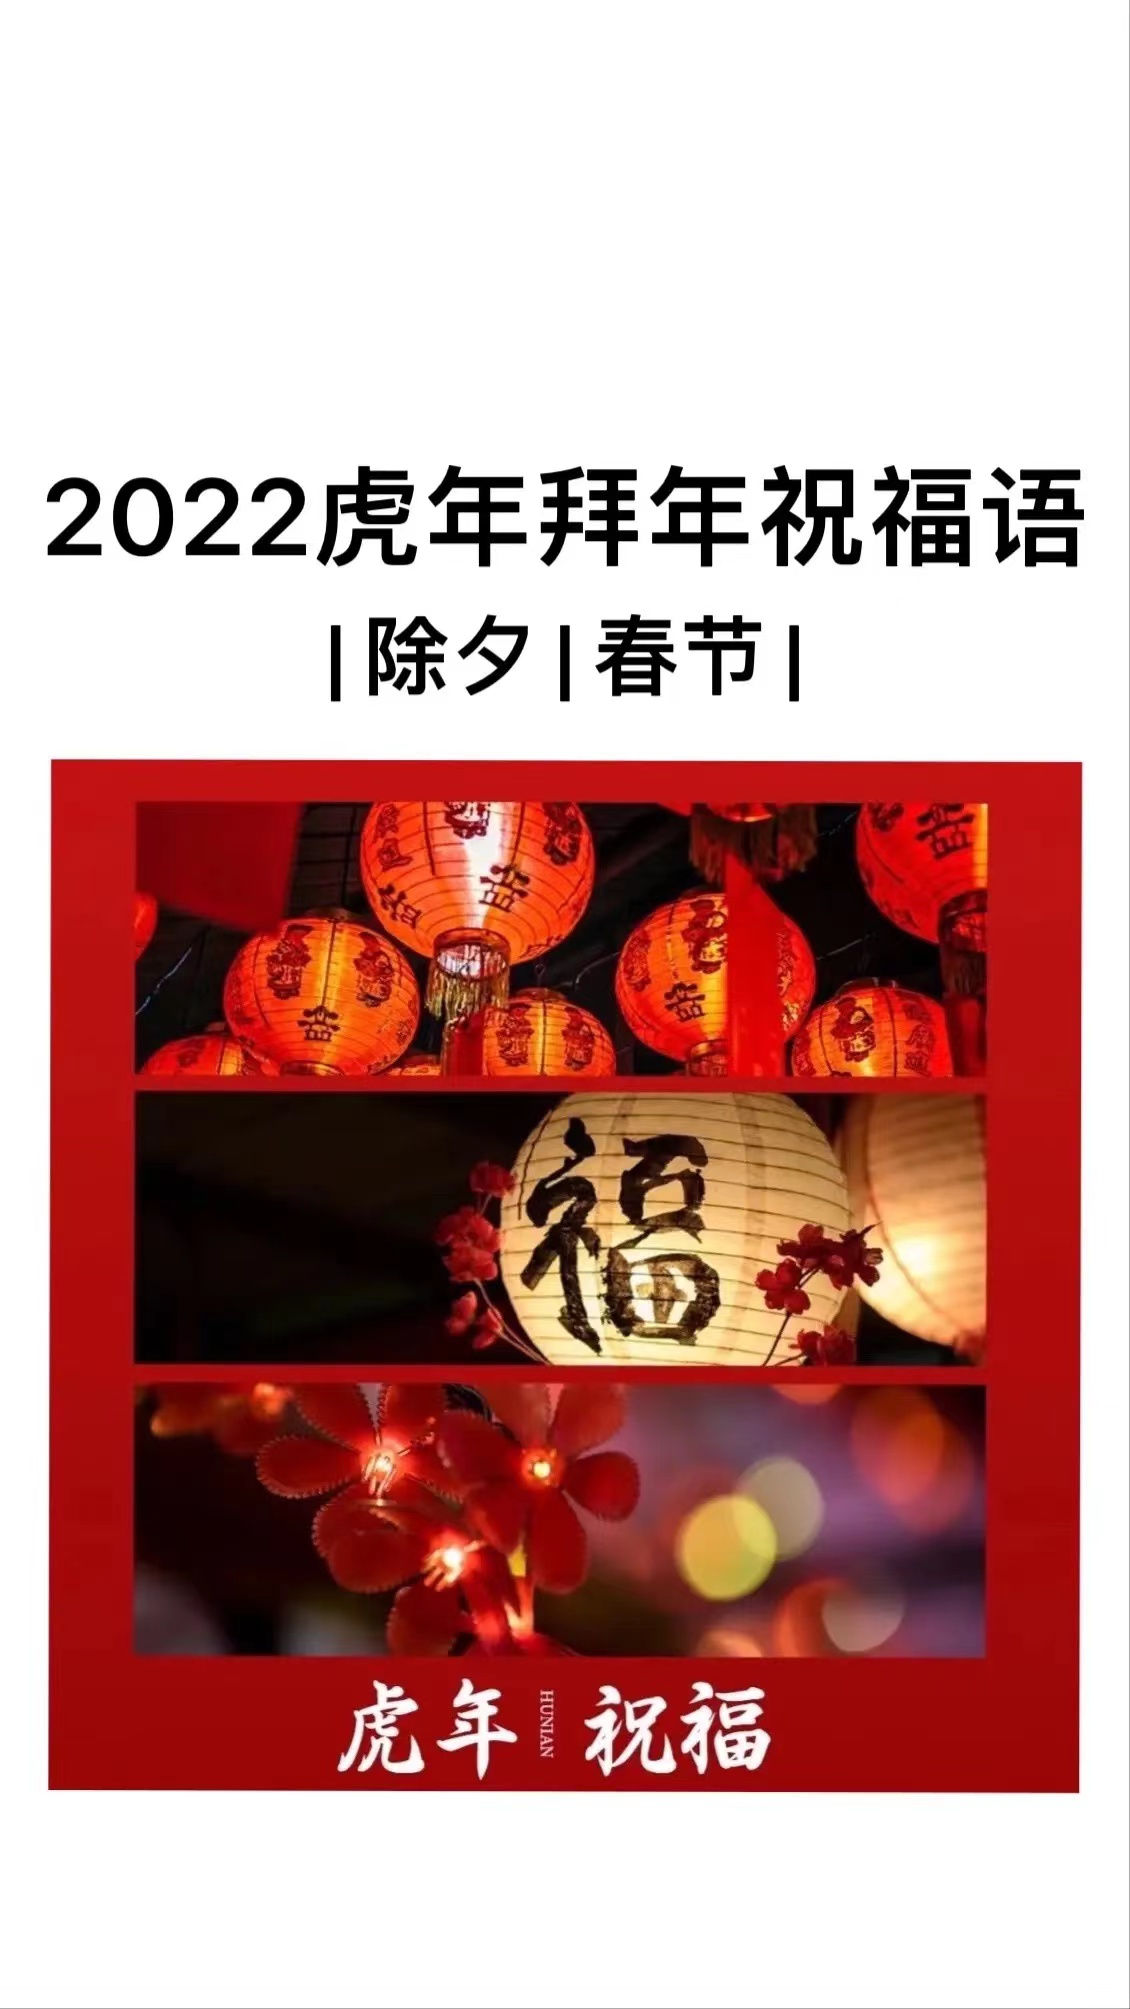 2022拜年祝福语图片